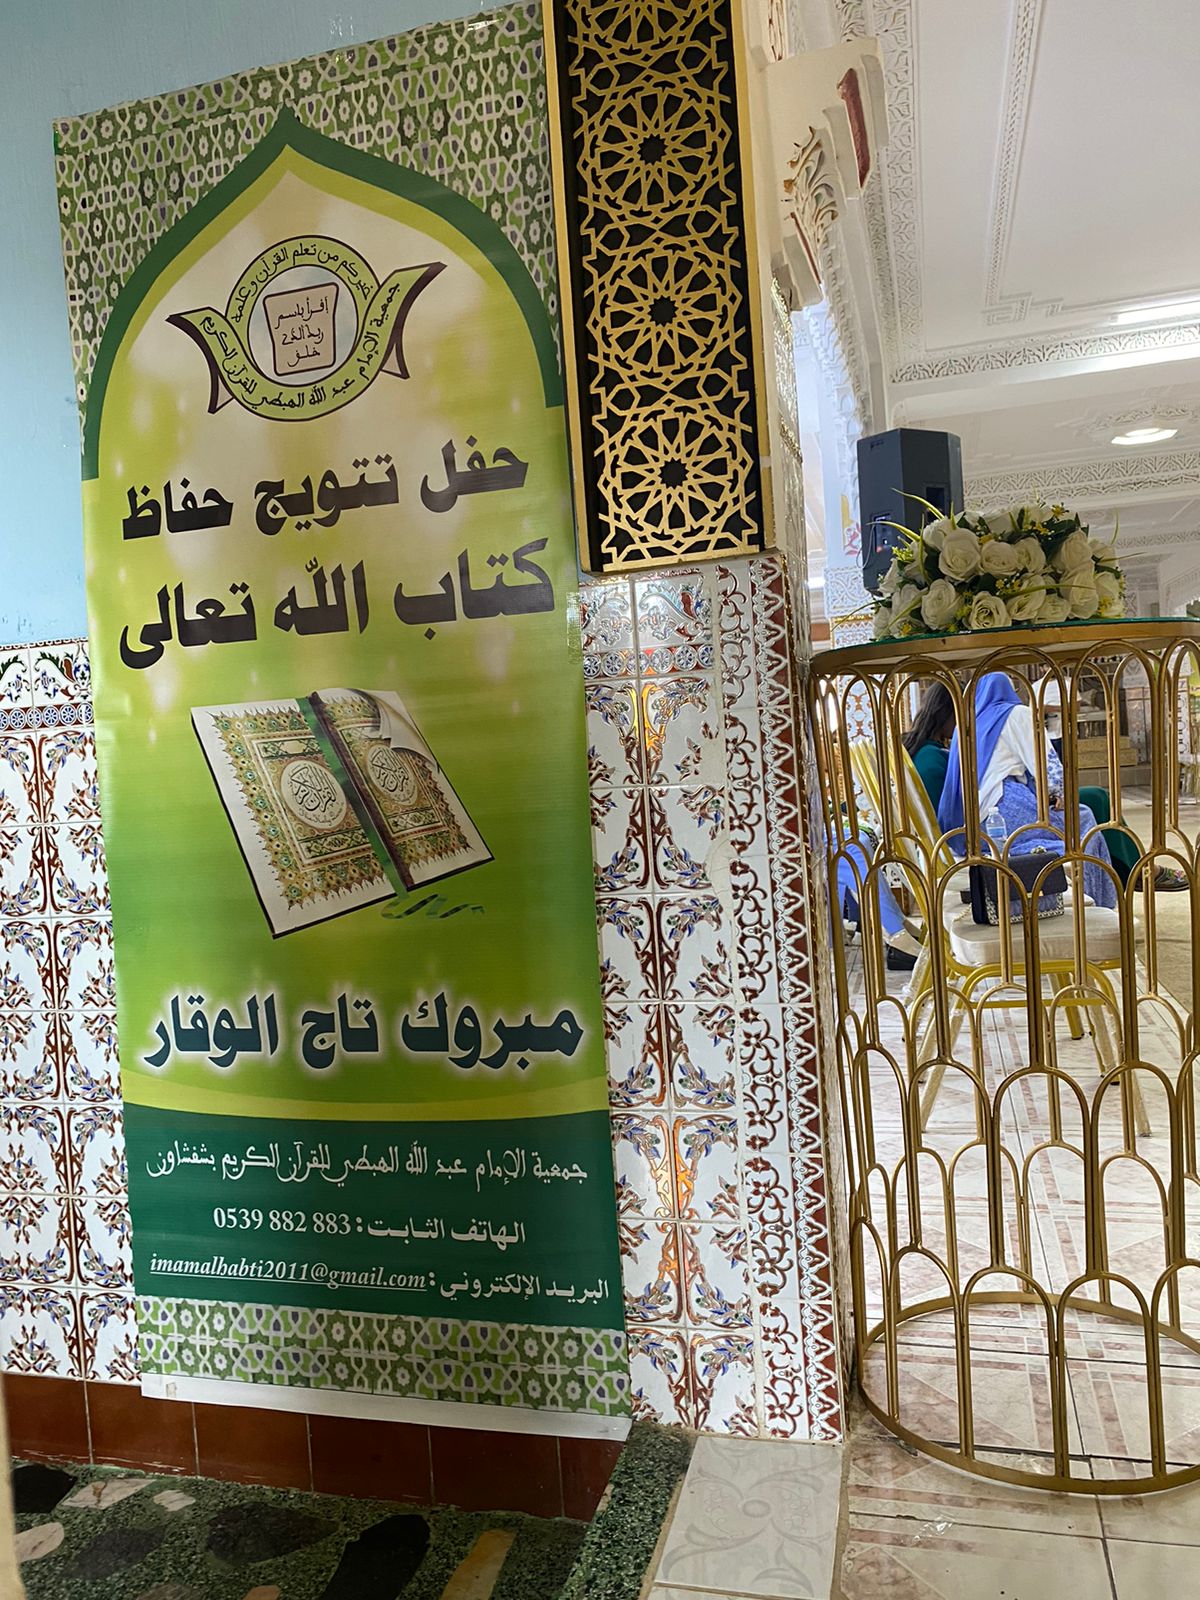 جمعية الإمام الهبطي للقرآن الكريم بشفشاون، تنظم حفل تتويج متخرجي وحفاظ كتاب الله تعالى. 